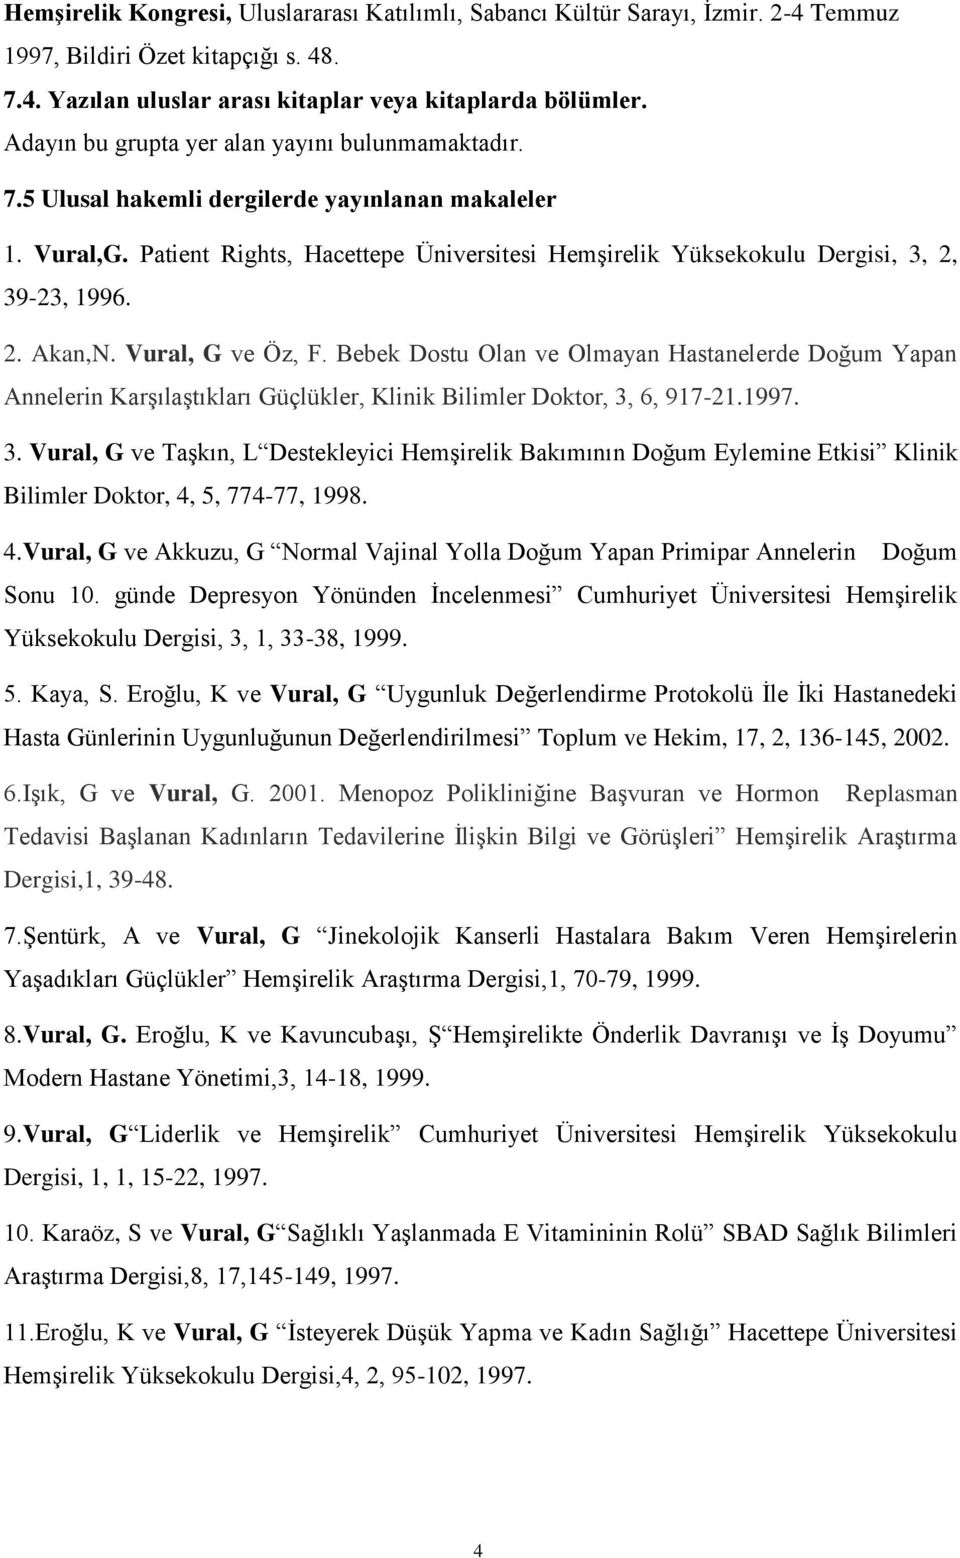 Patient Rights, Hacettepe Üniversitesi Hemşirelik Yüksekokulu Dergisi, 3, 2, 39-23, 1996. 2. Akan,N. Vural, G ve Öz, F.